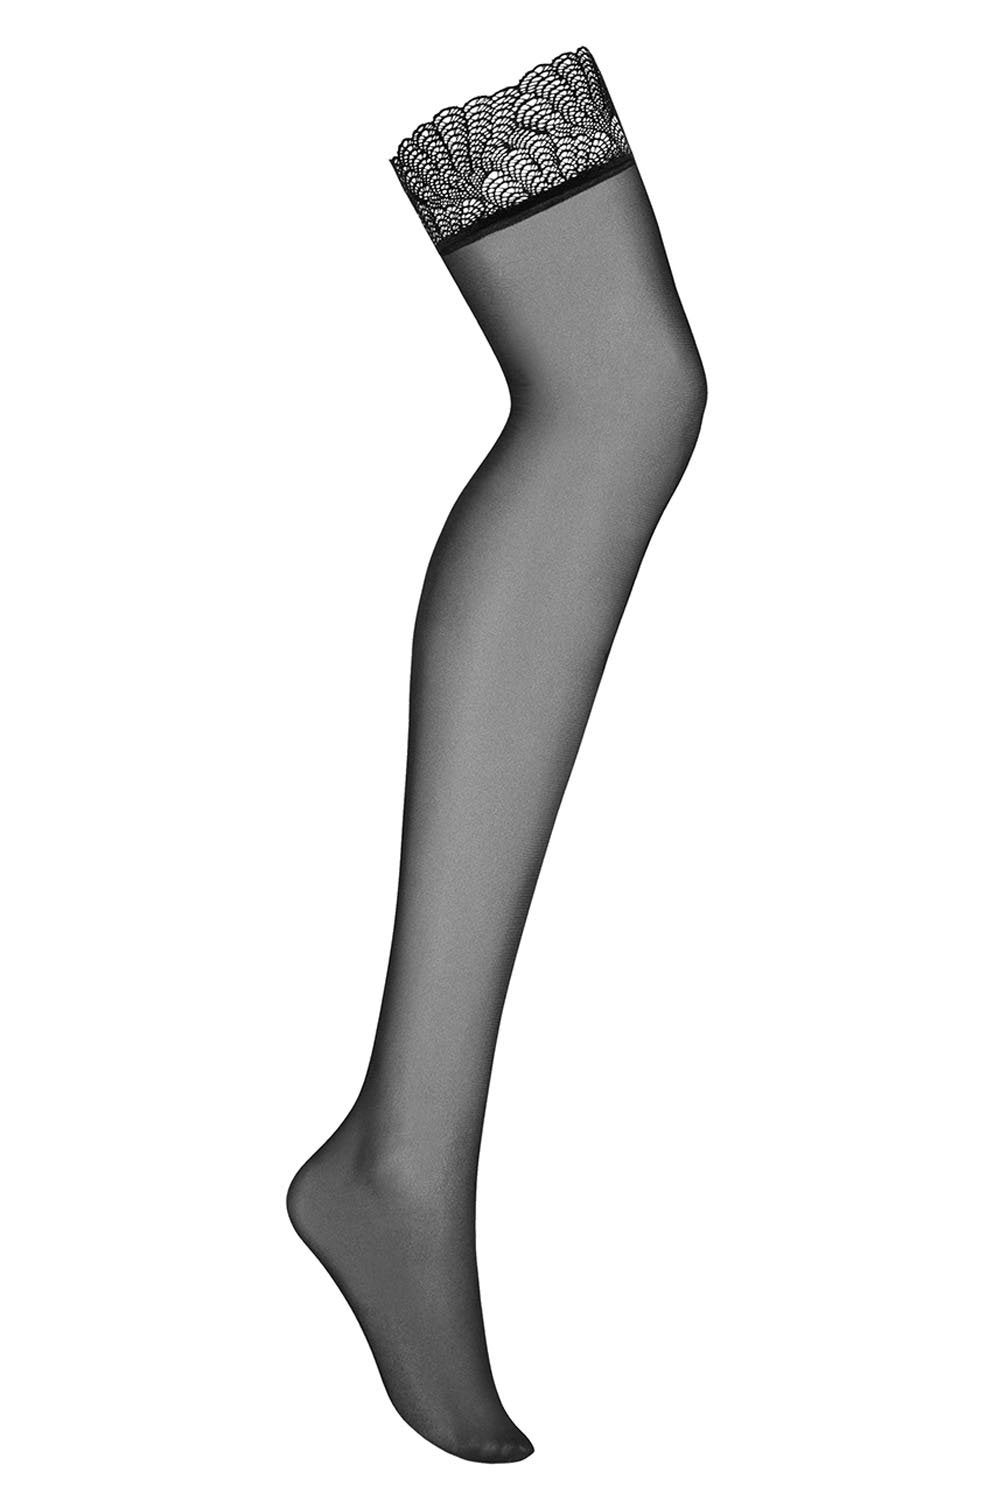 black suspender stockings australia 